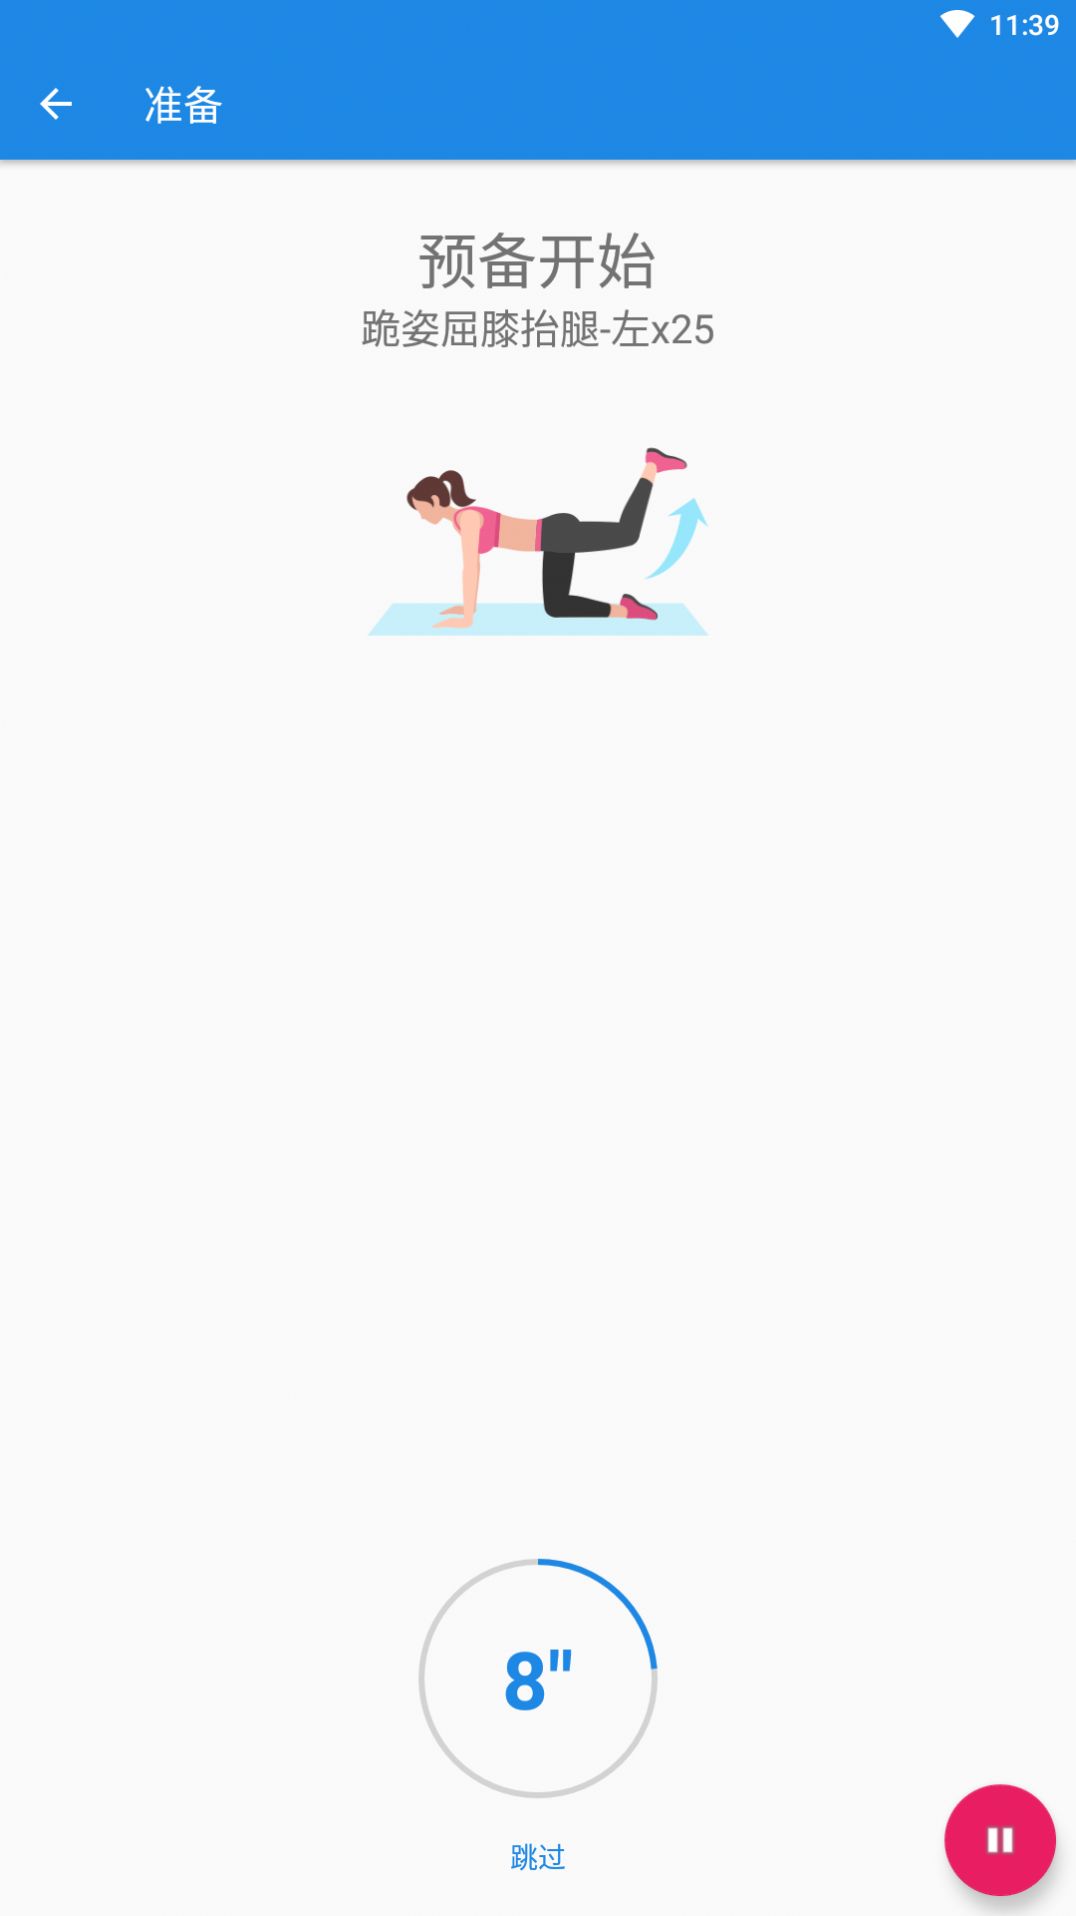 凯越瑜伽体育健身app